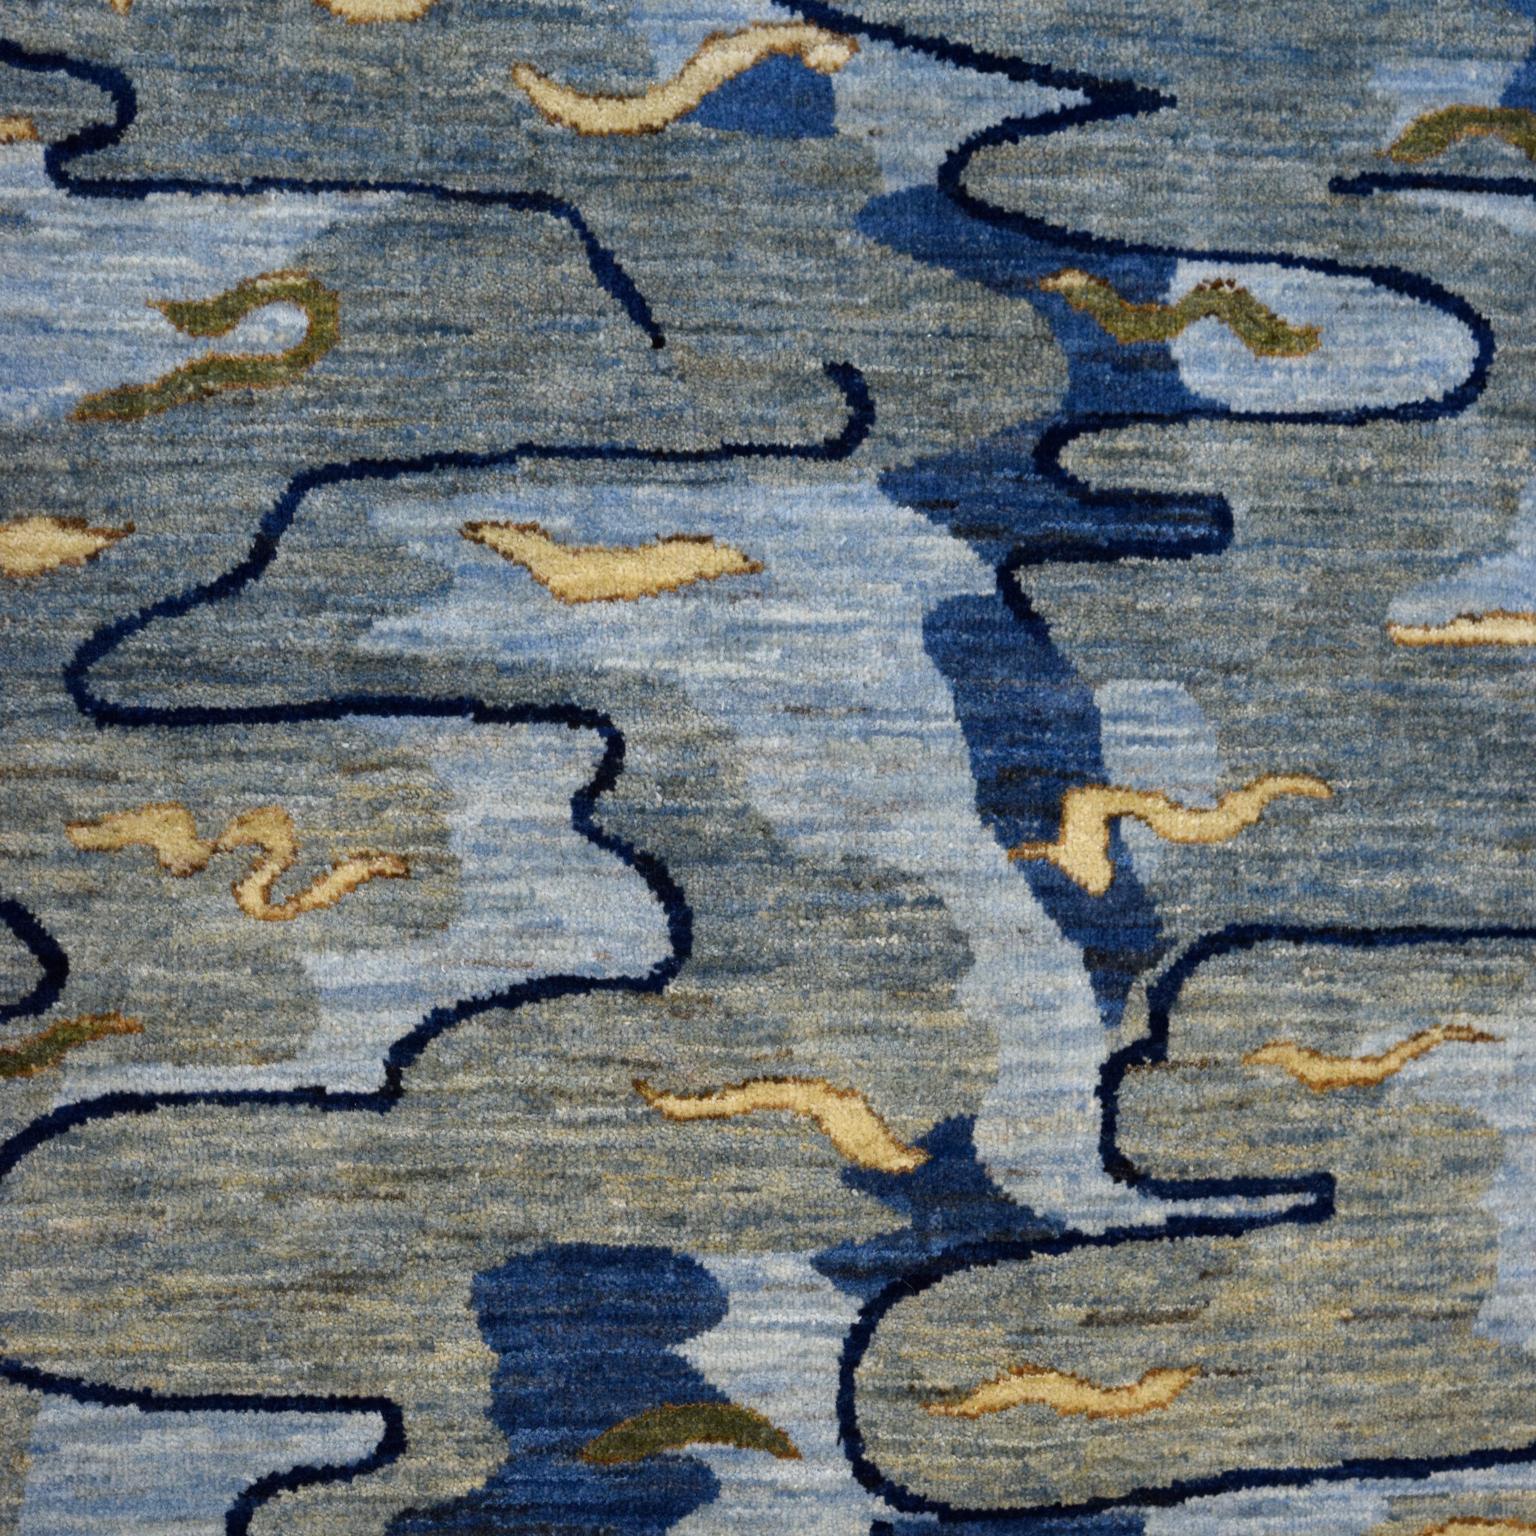 Dieser handgeknüpfte Teppich mit dem Titel Reflections, der sanft über die Oberfläche eines Sees plätschert, bevor er mit der Uferlinie und stilisierten Pflanzenmotiven kollidiert, misst 4'11